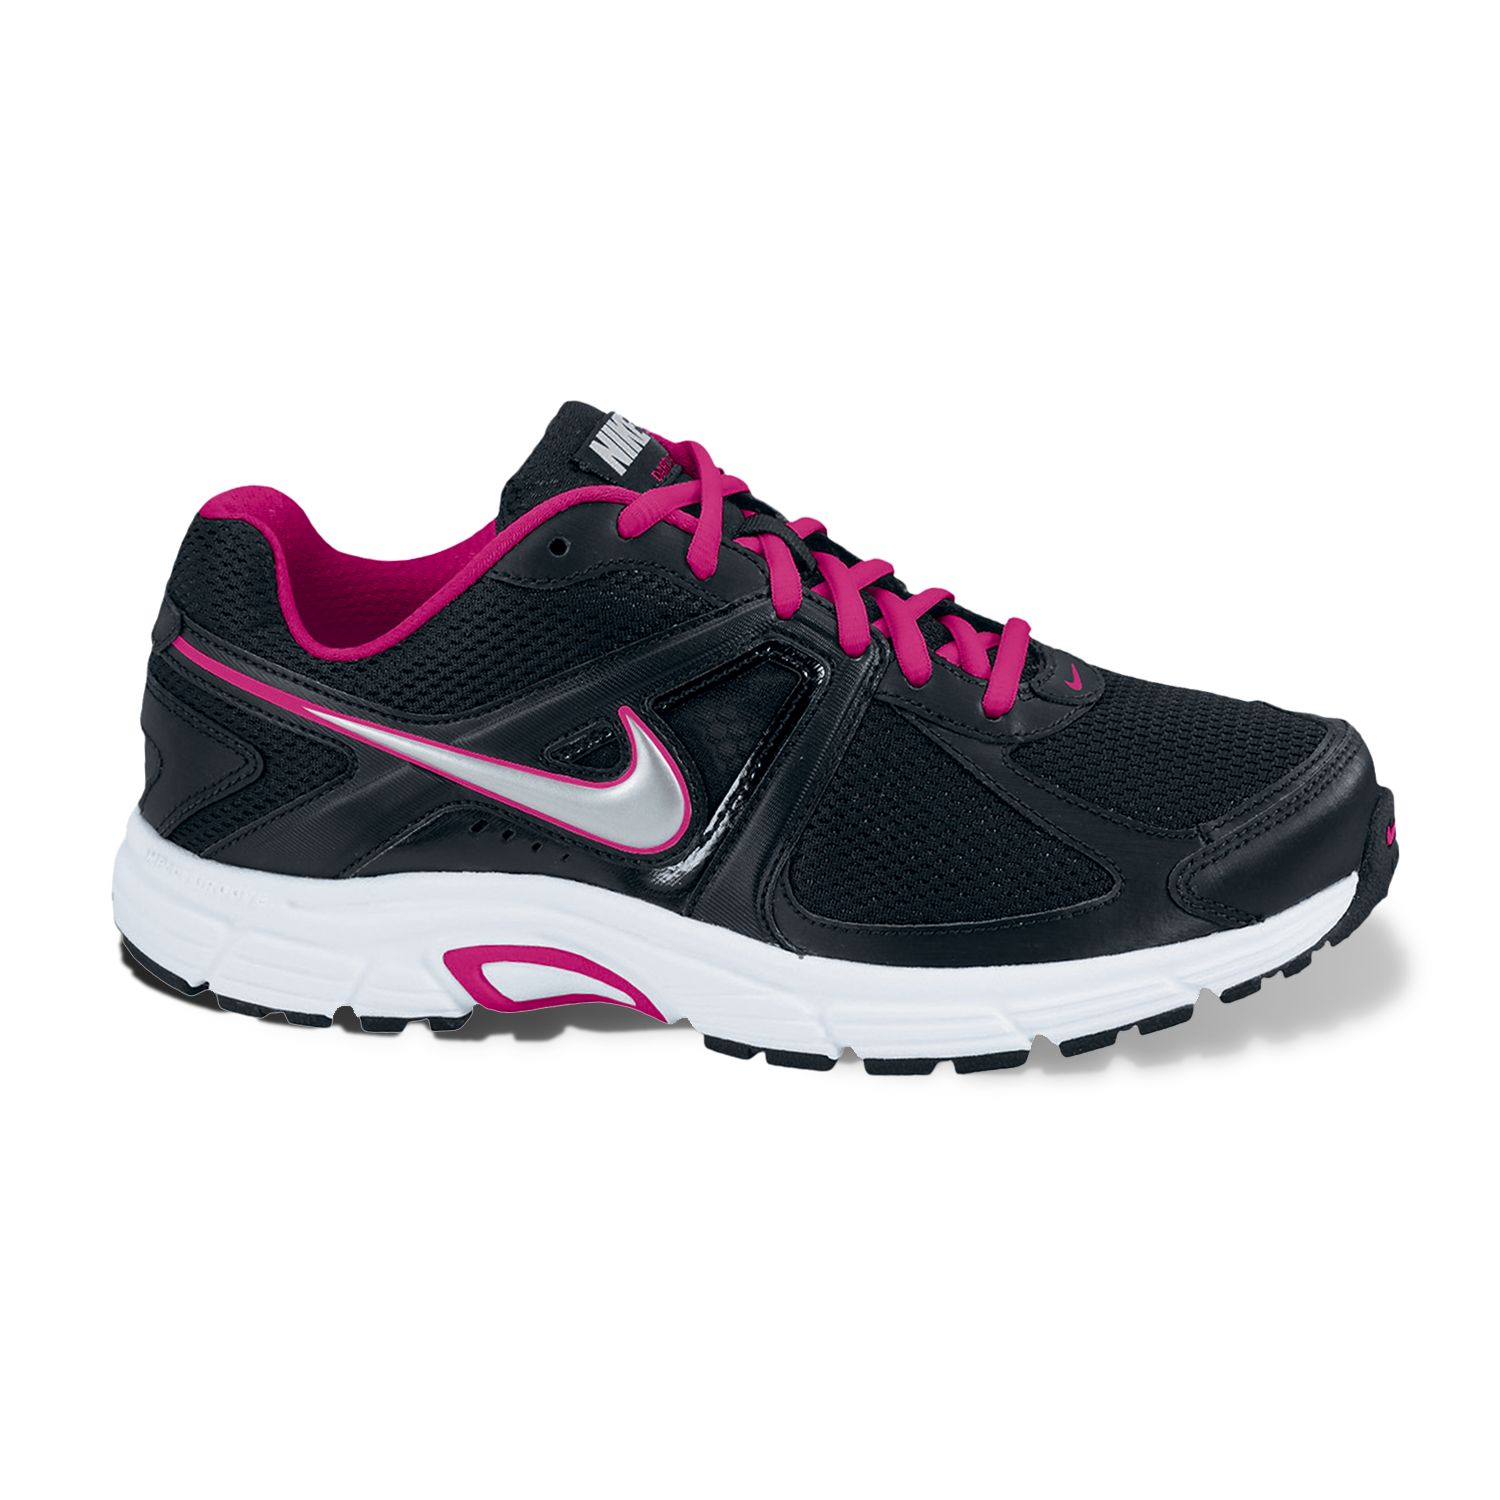 Nike Dart 9 Running Shoes - Women